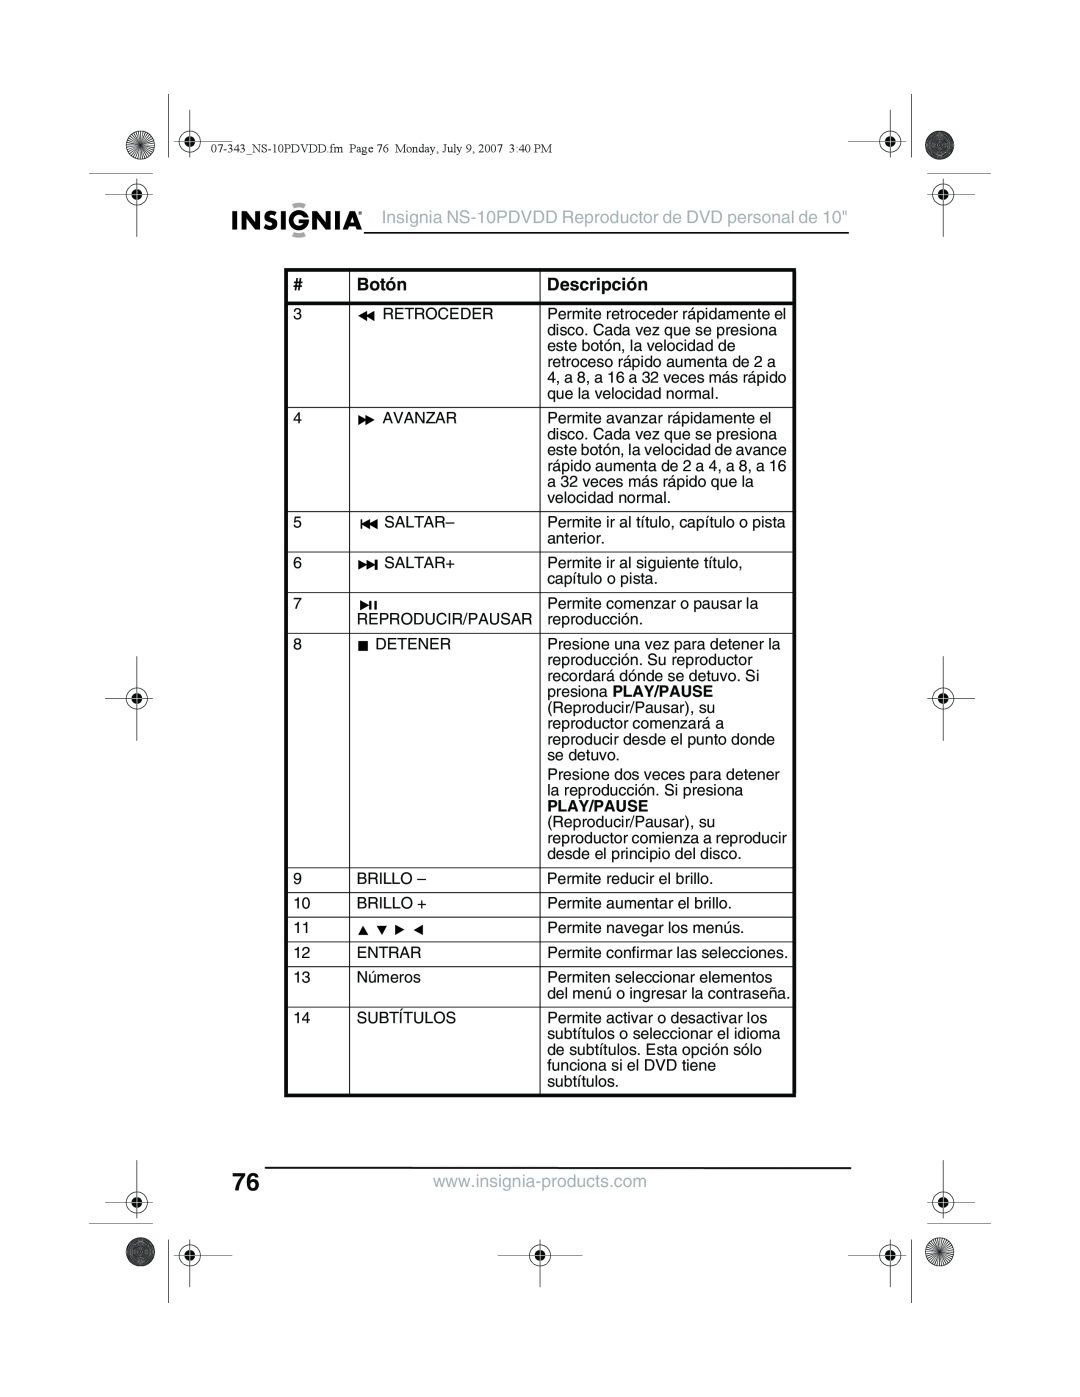 Insignia manual Insignia NS-10PDVDD Reproductor de DVD personal de, Botón, Descripción, presiona PLAY/PAUSE, Play/Pause 